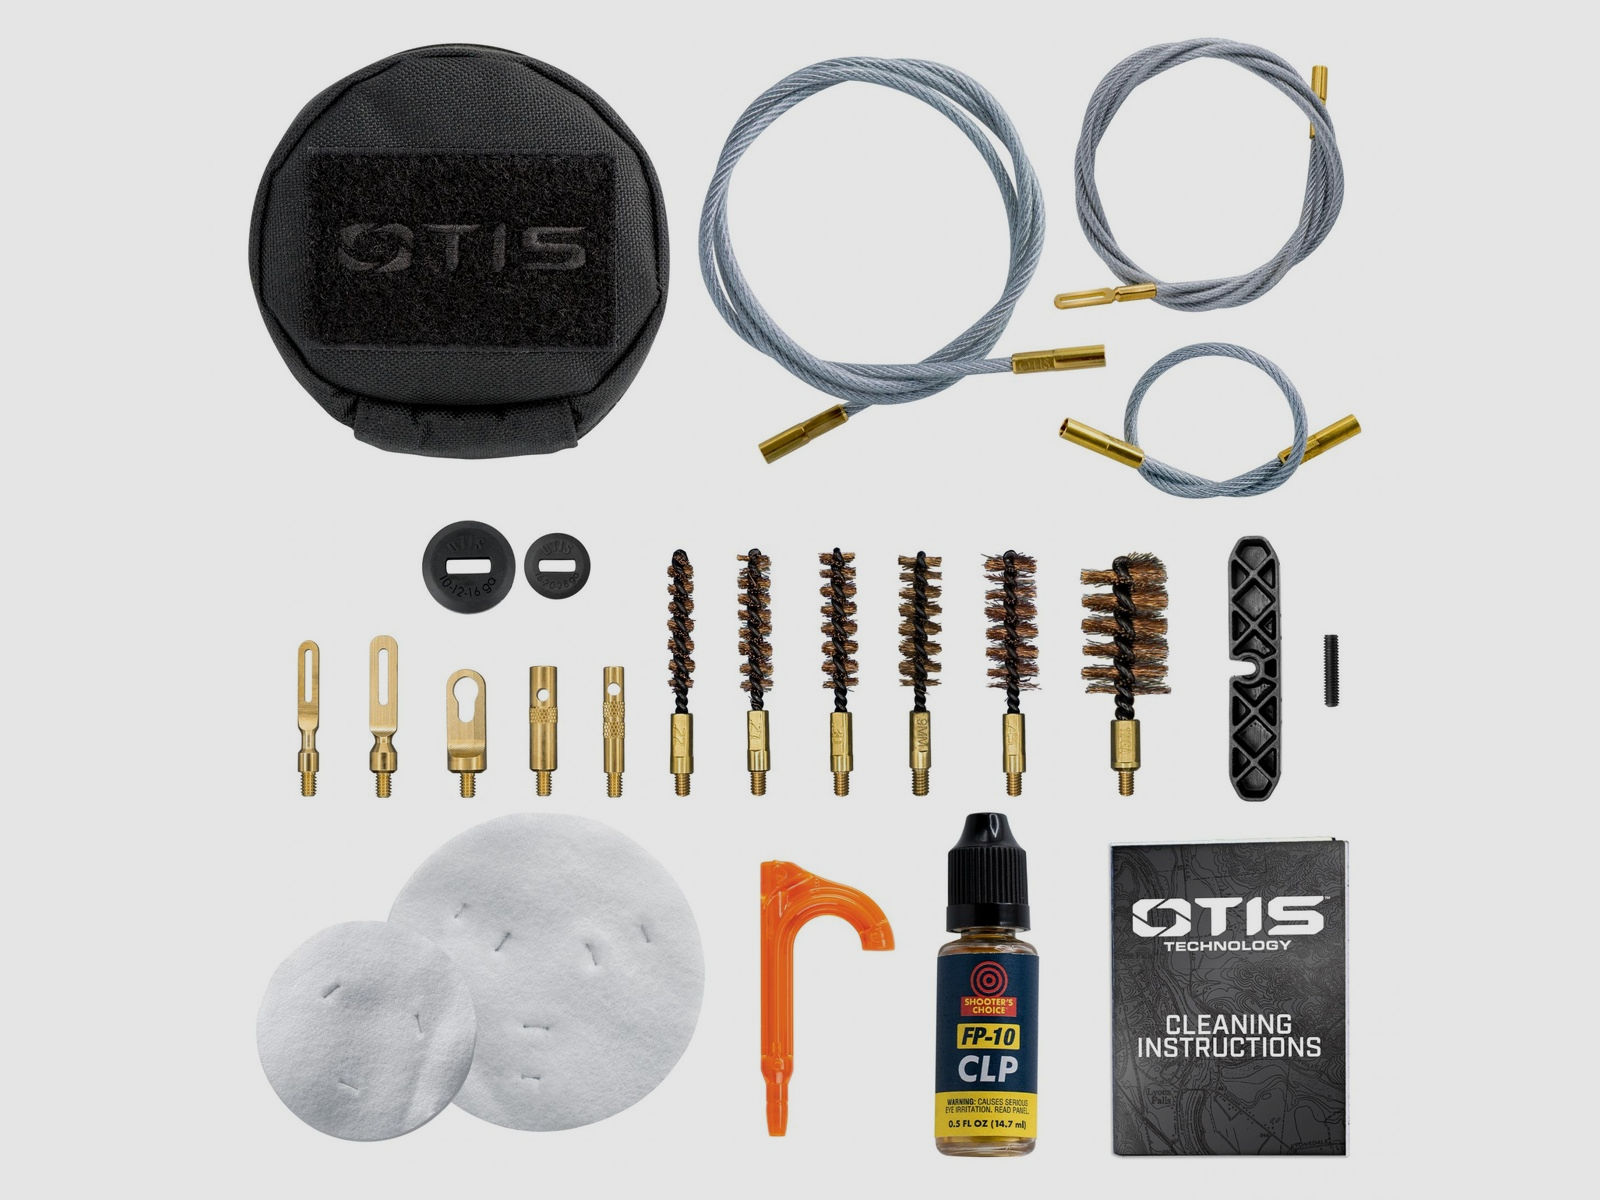 Otis Tactical Reinigungs-Set für .22/.223, .270, .30/.308/30-06/30-30, .38/9mm, .45 cal, .12 inkl. Tasche